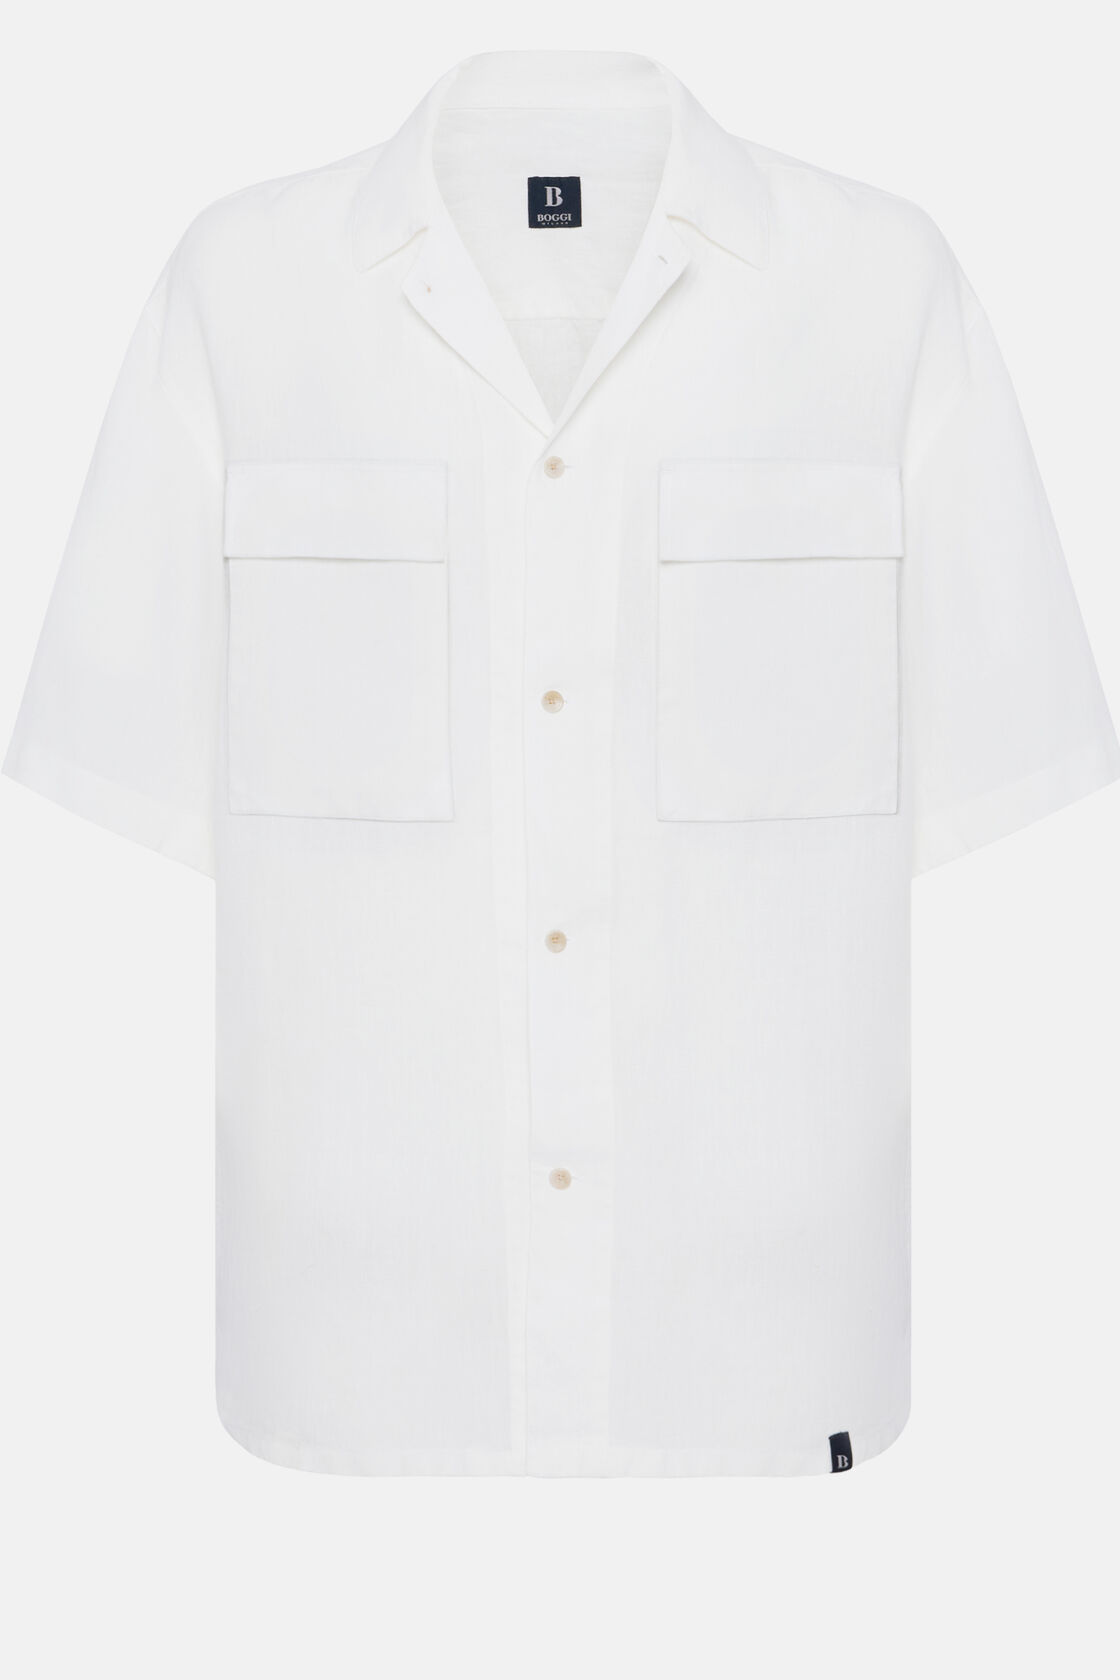 Fehér színű vászon tábori külső ing, White, hi-res